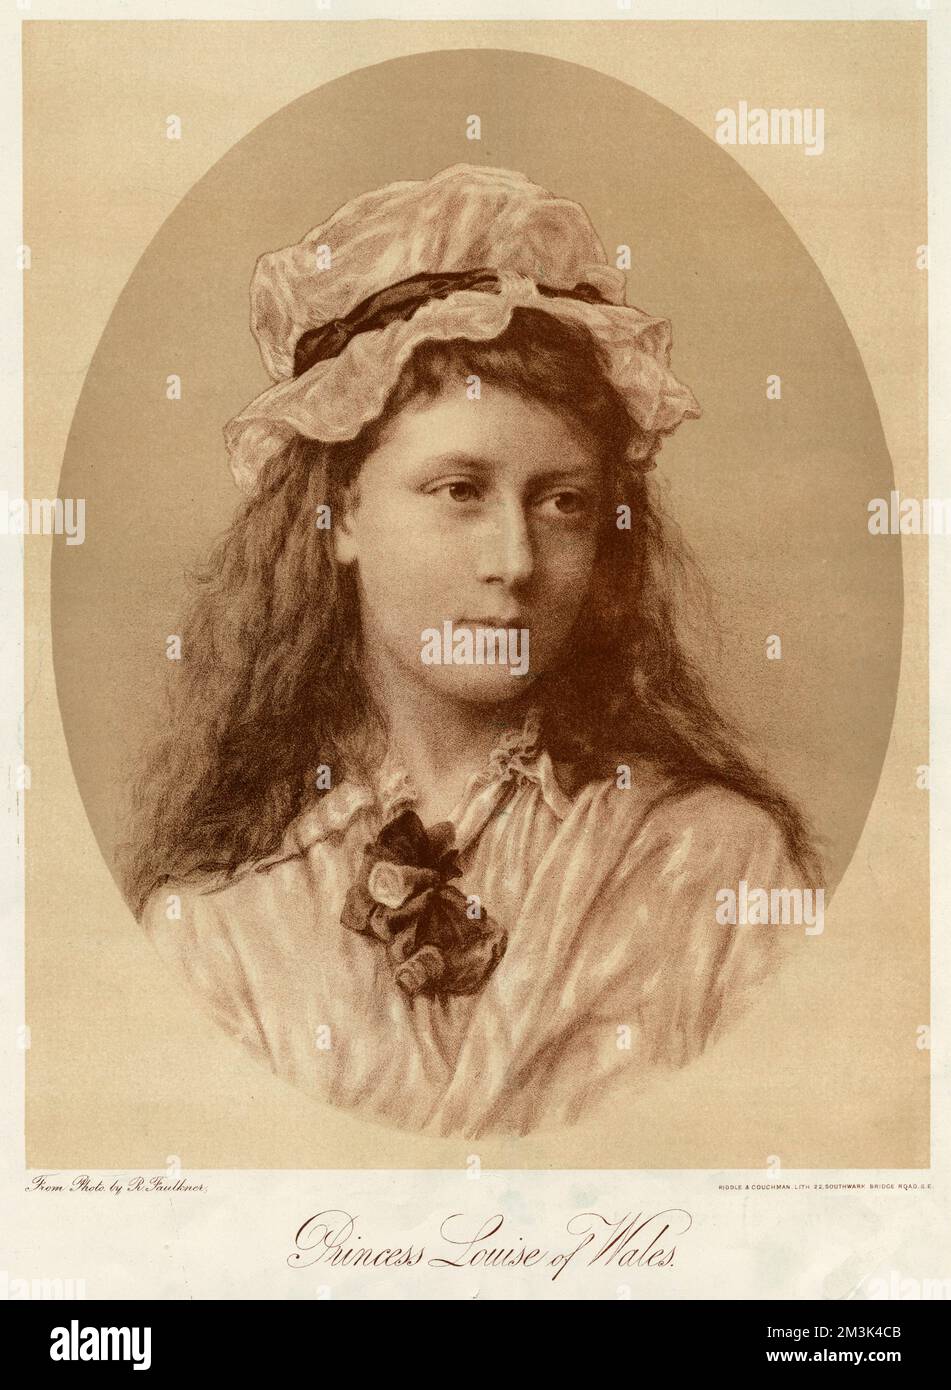 Prinzessin Louise von Wales (1867 - 1931), älteste Tochter von Edward, Prinz von Wales, im Alter von 17 Jahren. Datum: 1884 Stockfoto